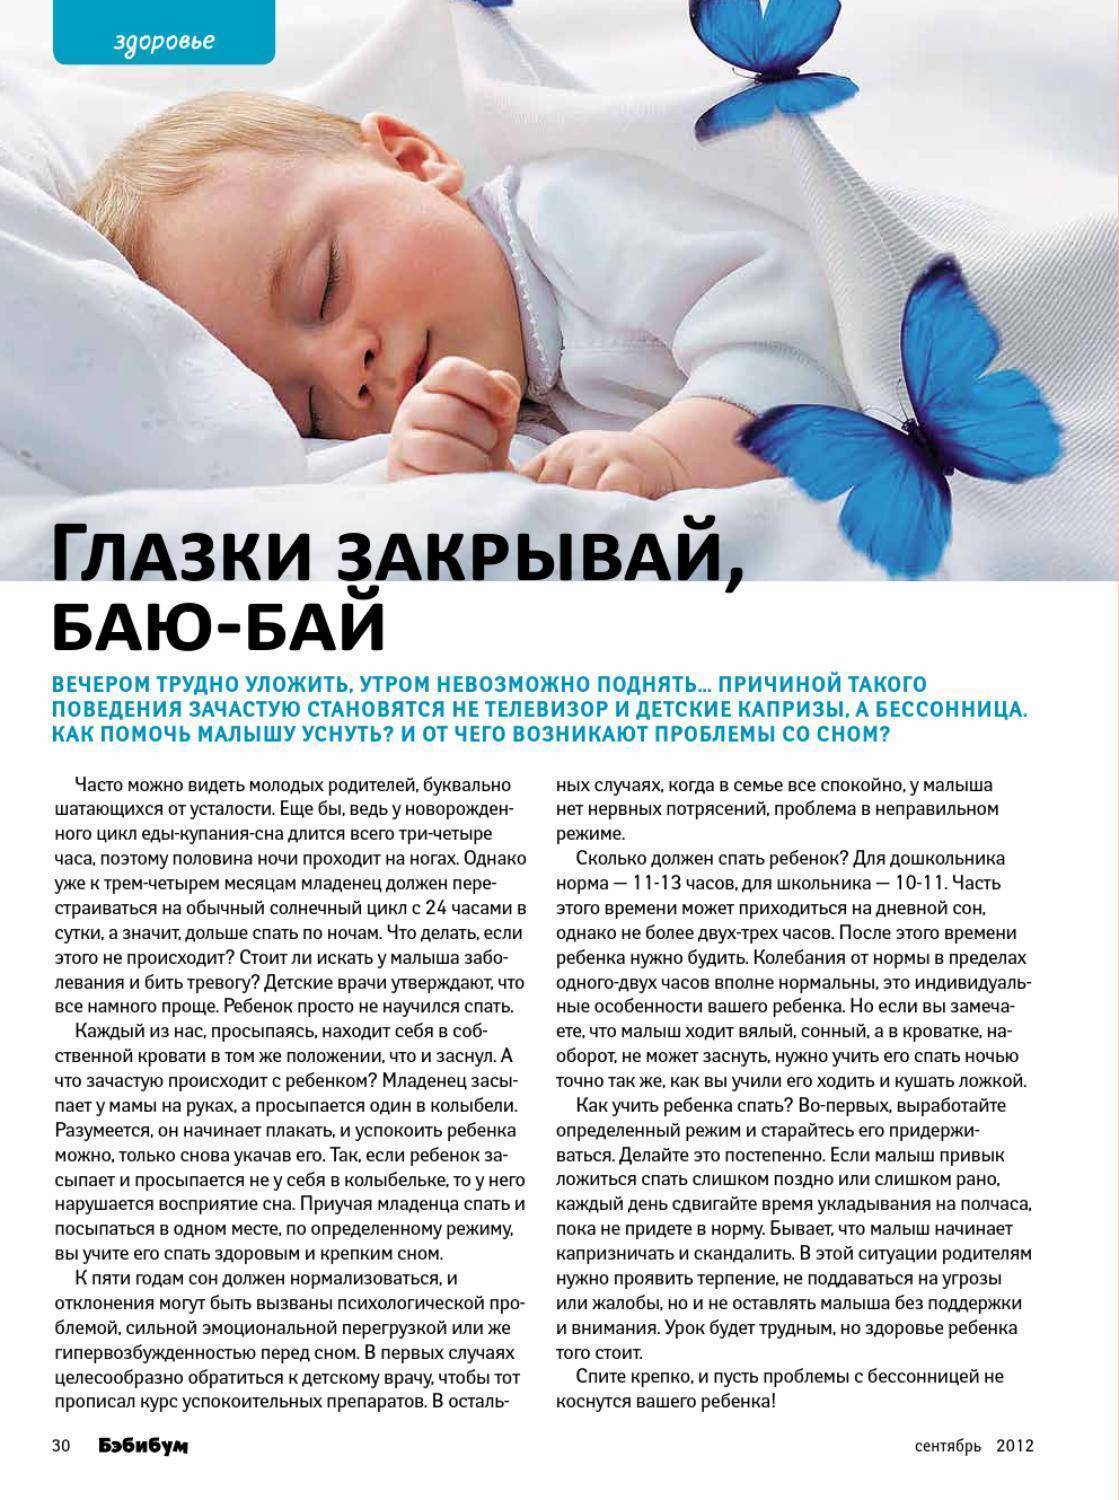 Нарушения сна у детей, исследование причин бессонницы у ребенка | невромед